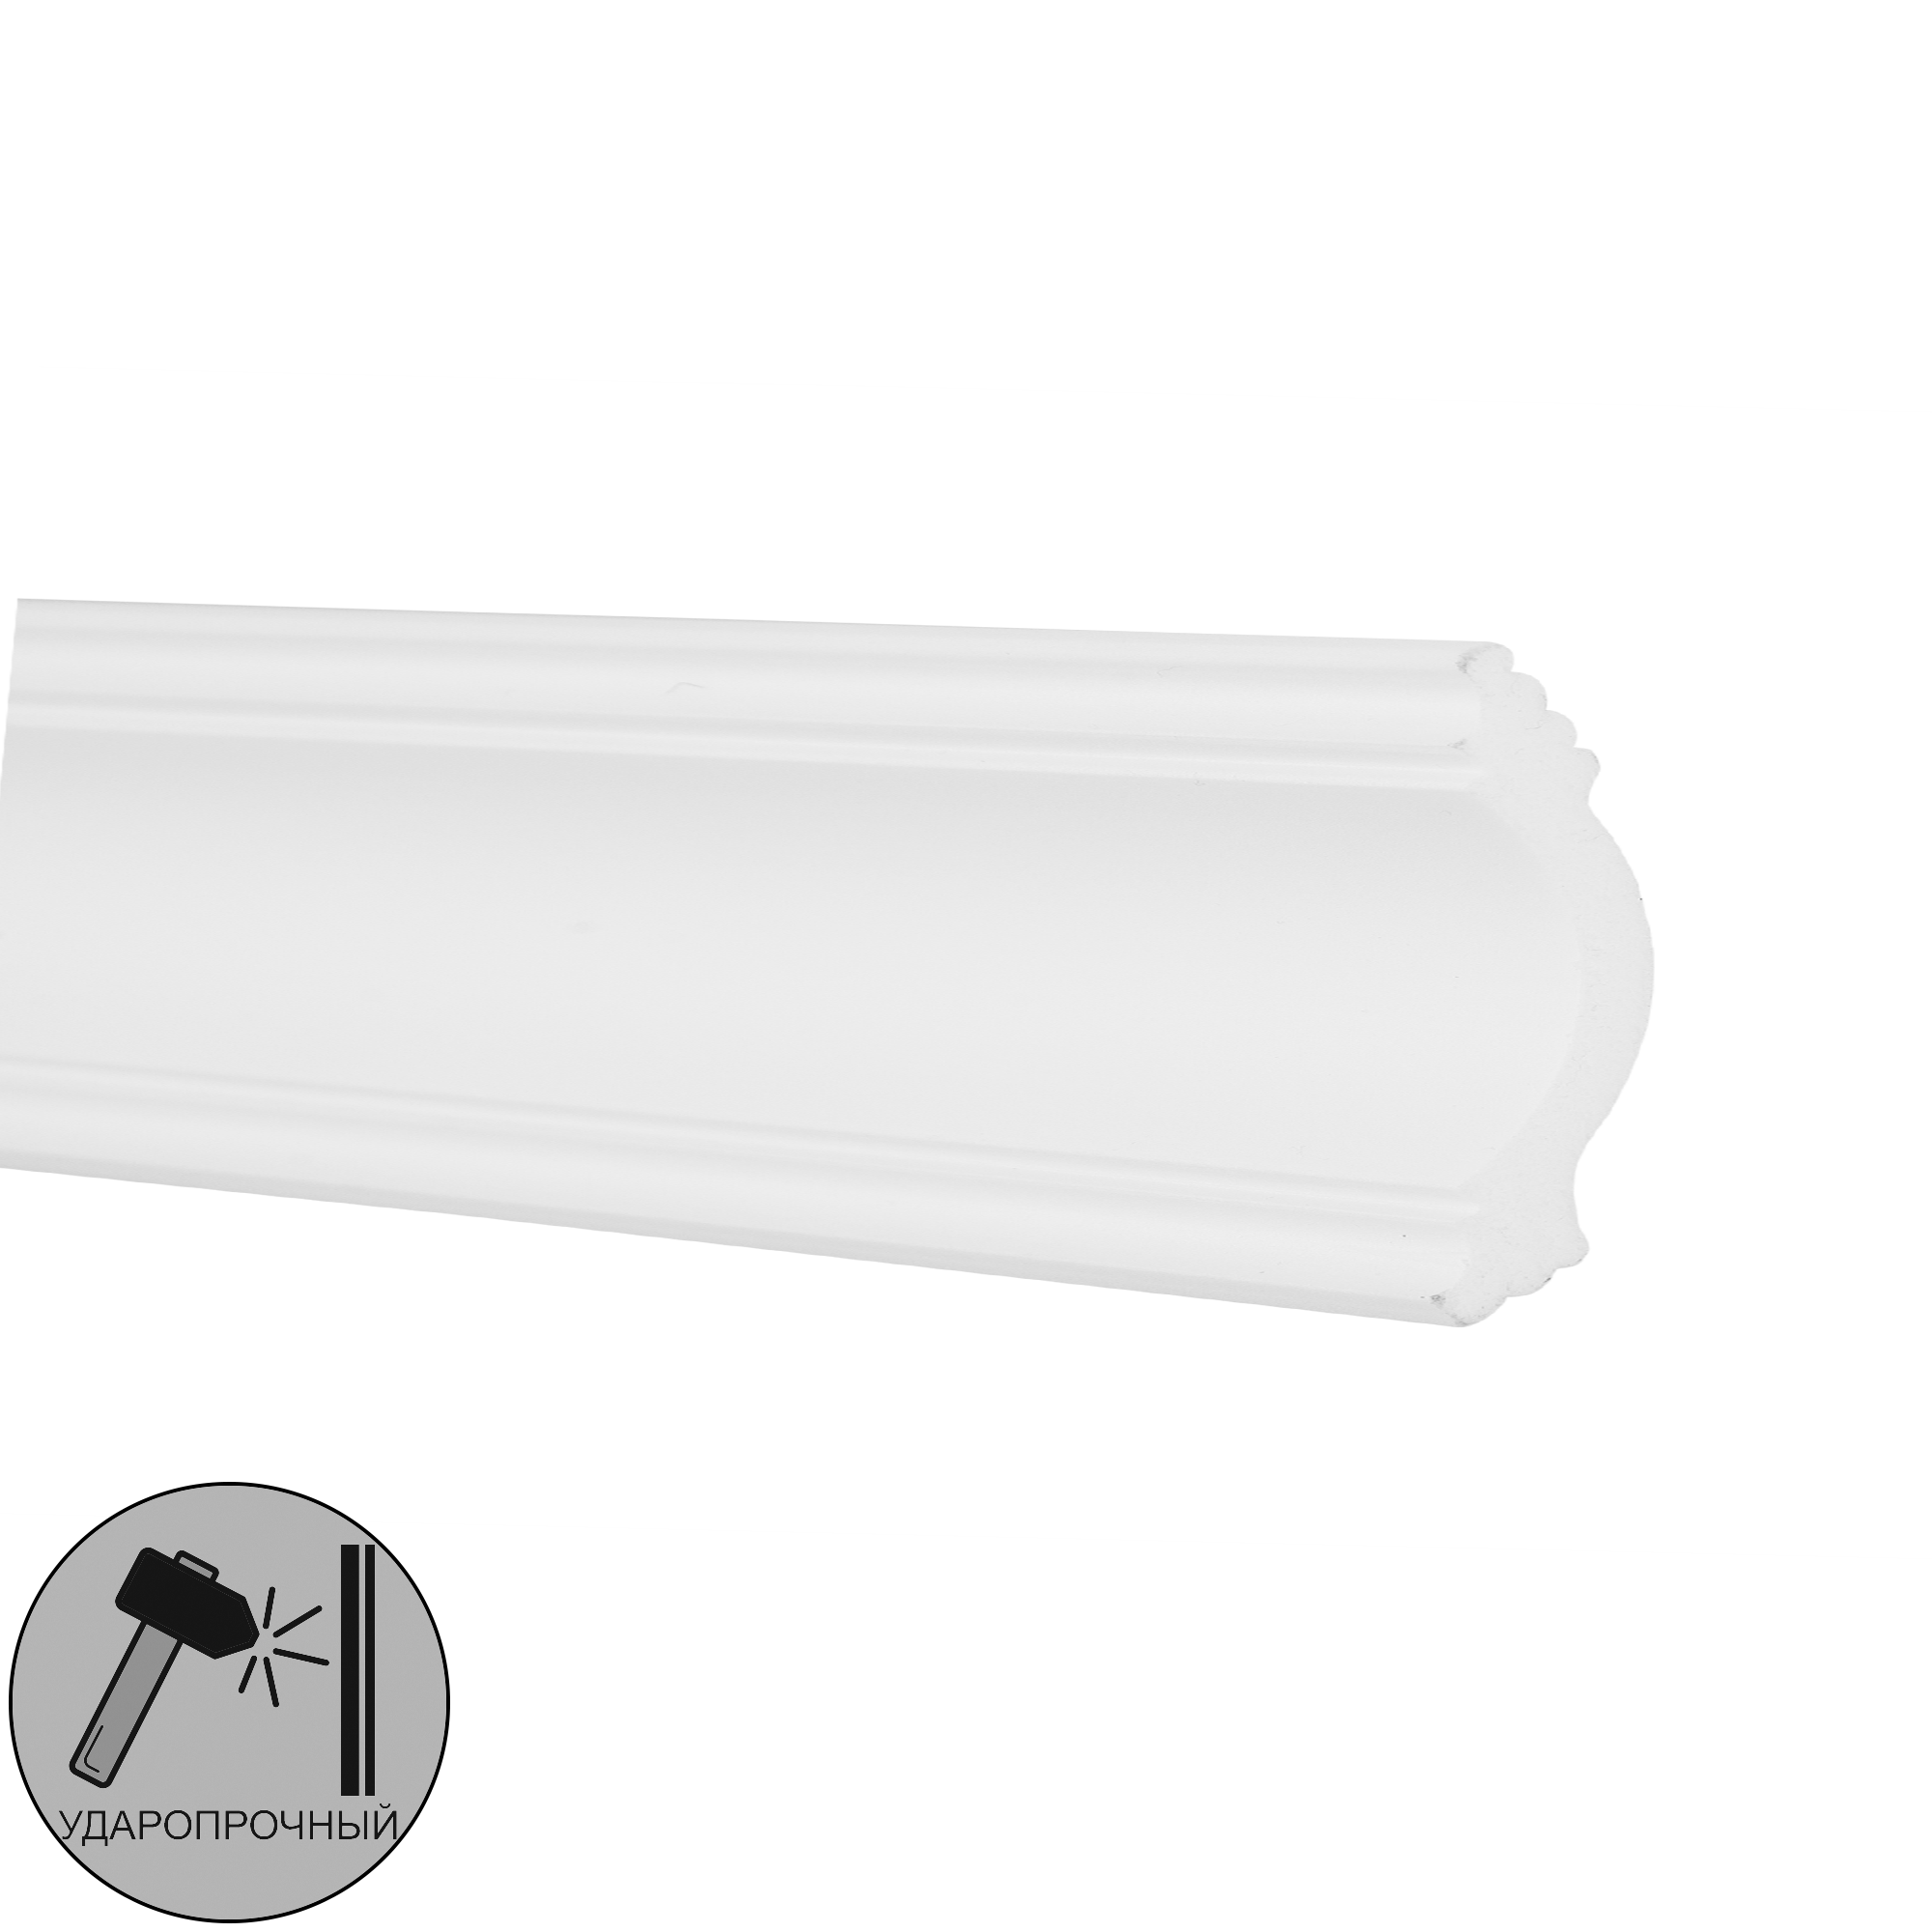 82365694 Плинтус потолочный полистирол ударопрочный LM01 белый 50x75x2000 мм STLM-0025521 NMC